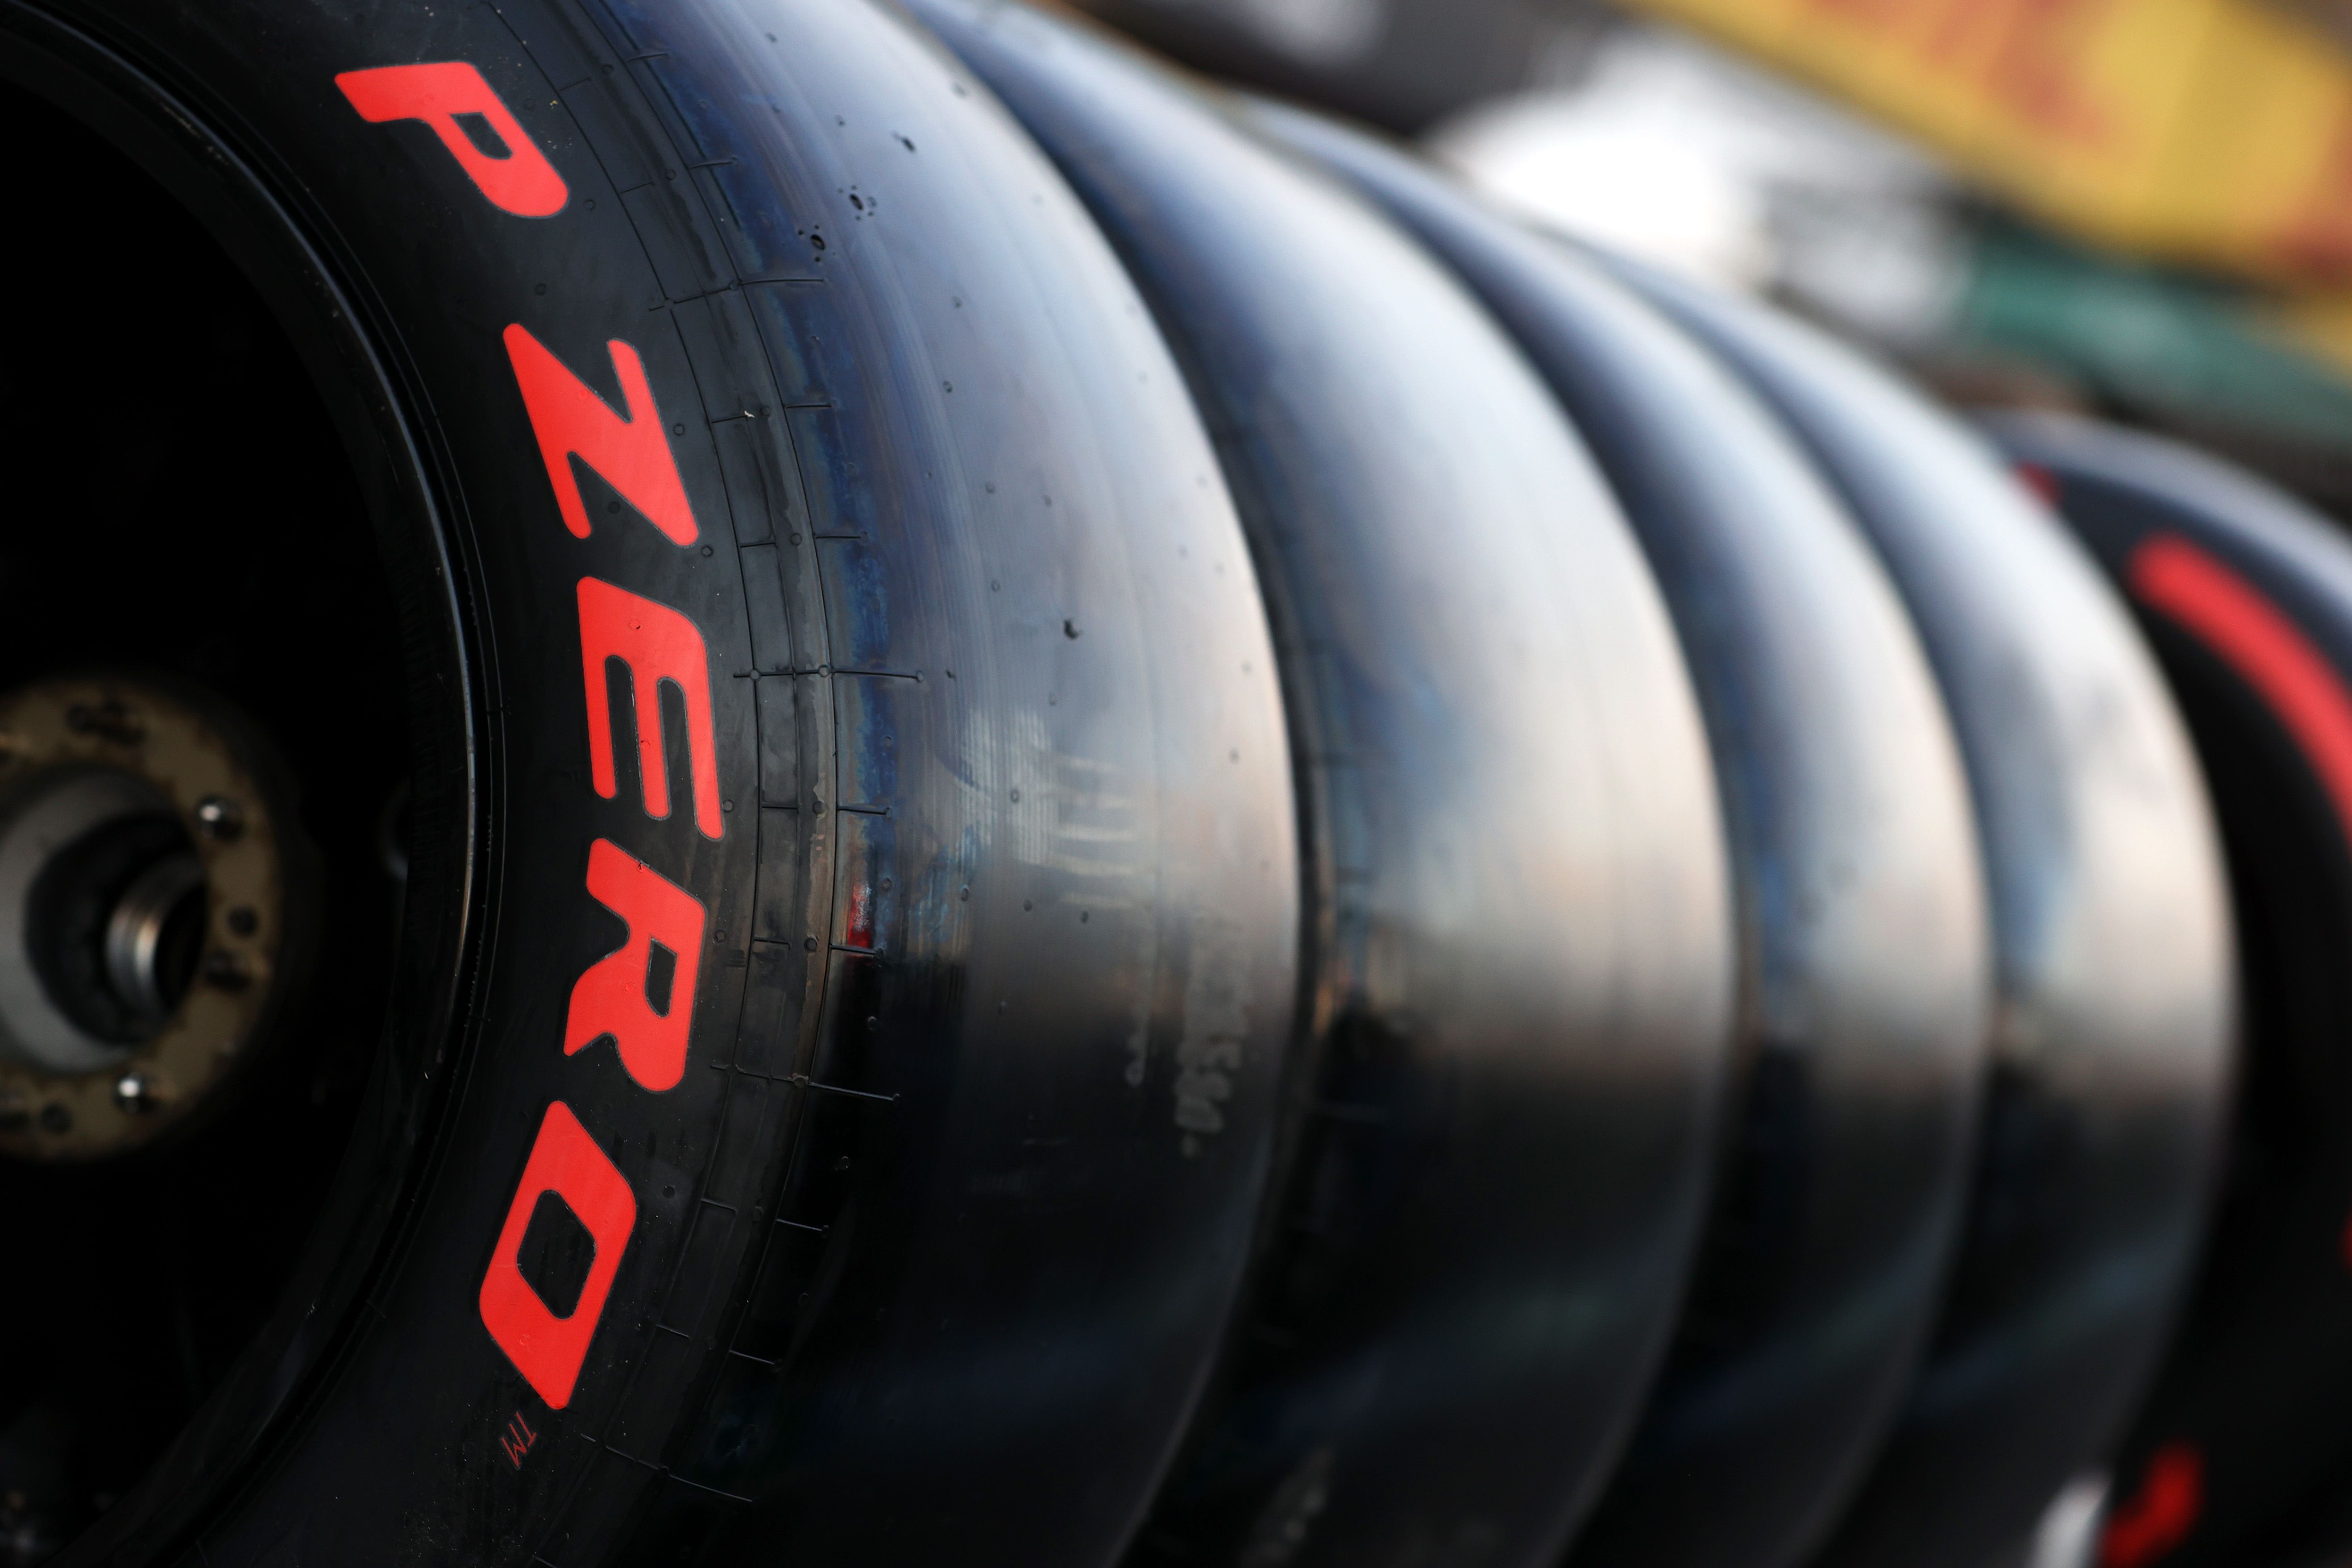 Pirelli formula 1 tyres ready to use.